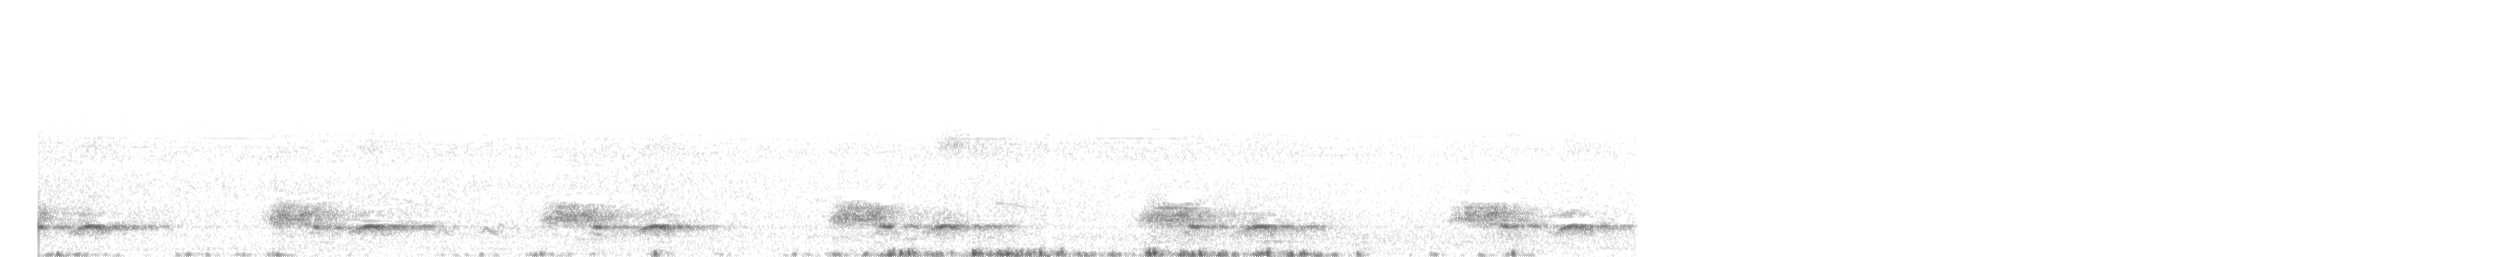 Ak Yüzlü Ağaçbıldırcını - ML158502081